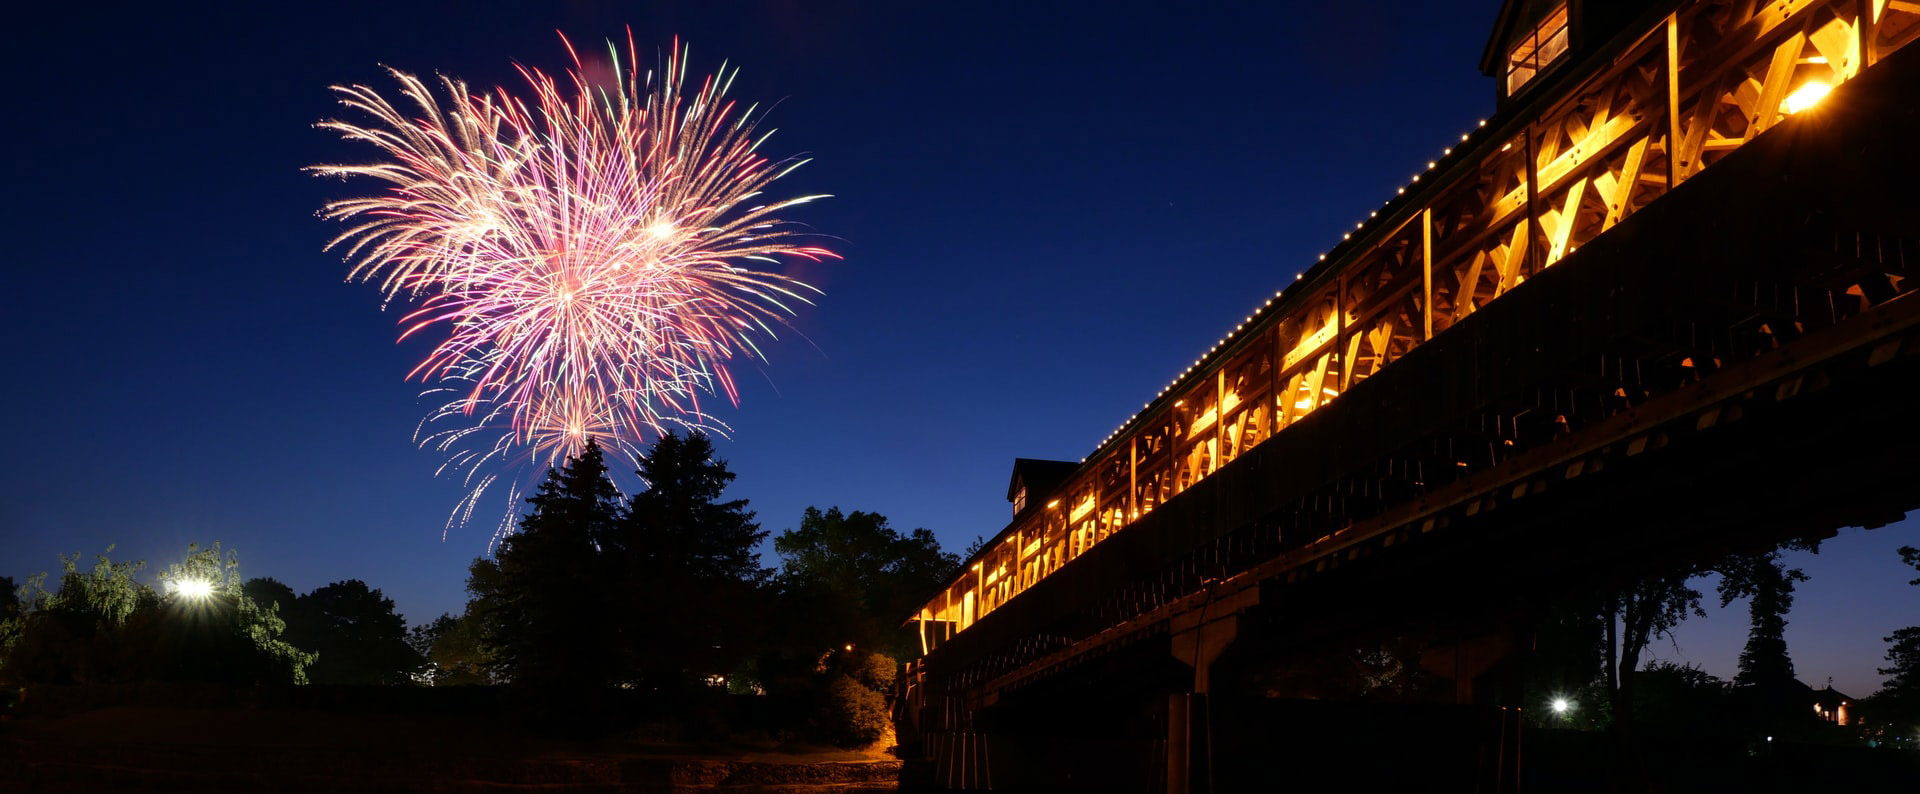 bridge-over-fireworks.jpg